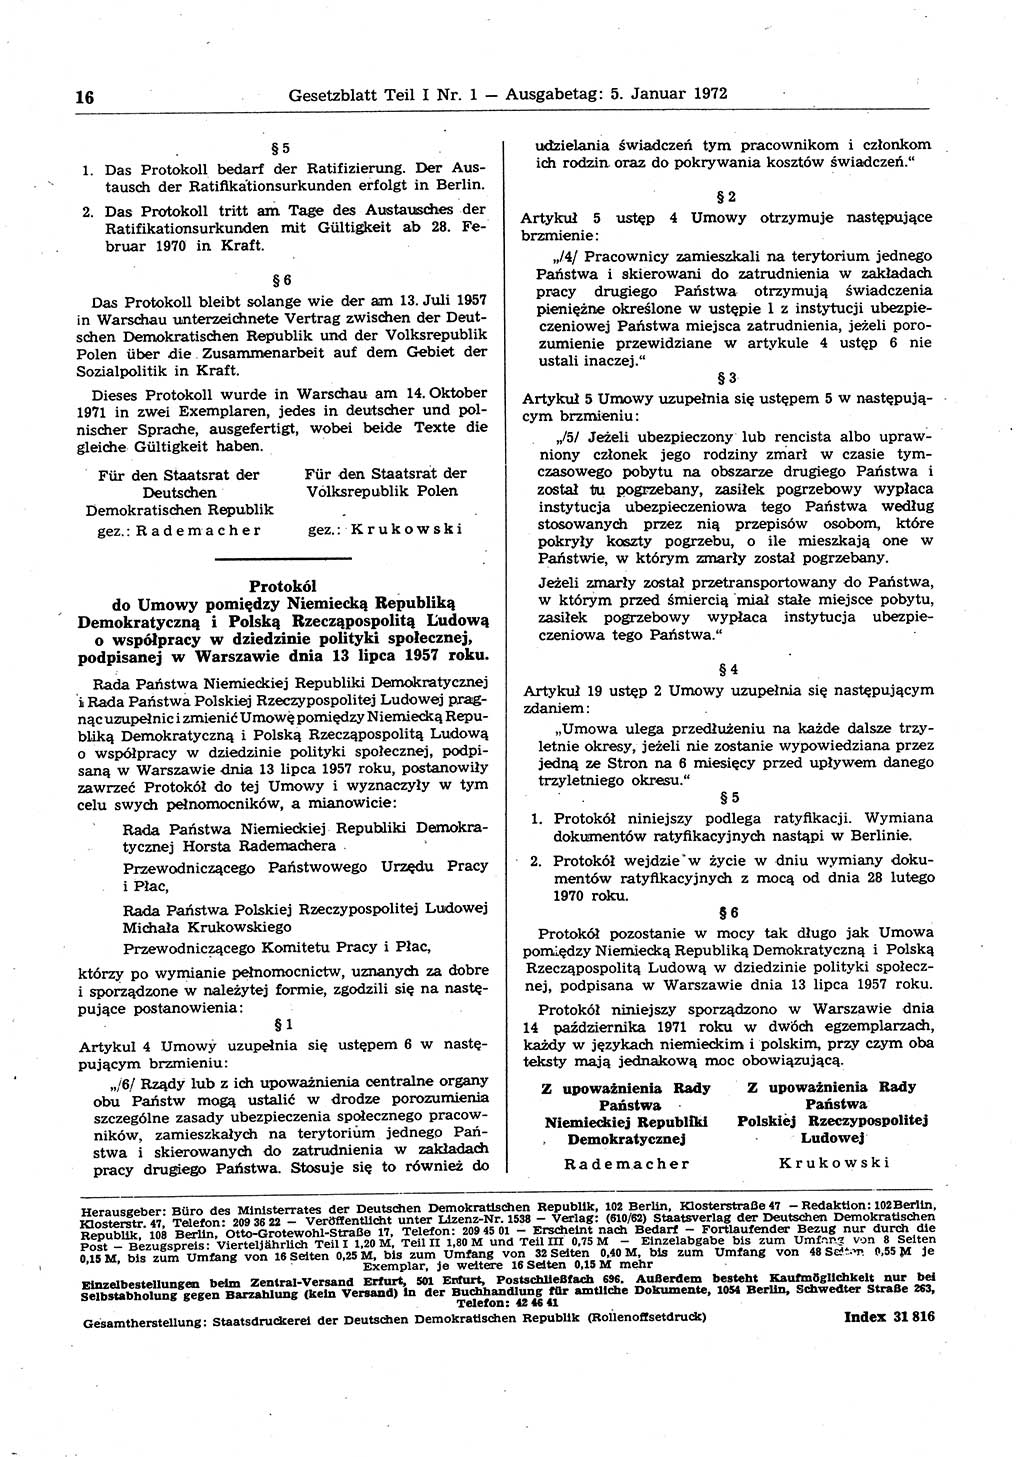 Gesetzblatt (GBl.) der Deutschen Demokratischen Republik (DDR) Teil Ⅰ 1972, Seite 16 (GBl. DDR Ⅰ 1972, S. 16)